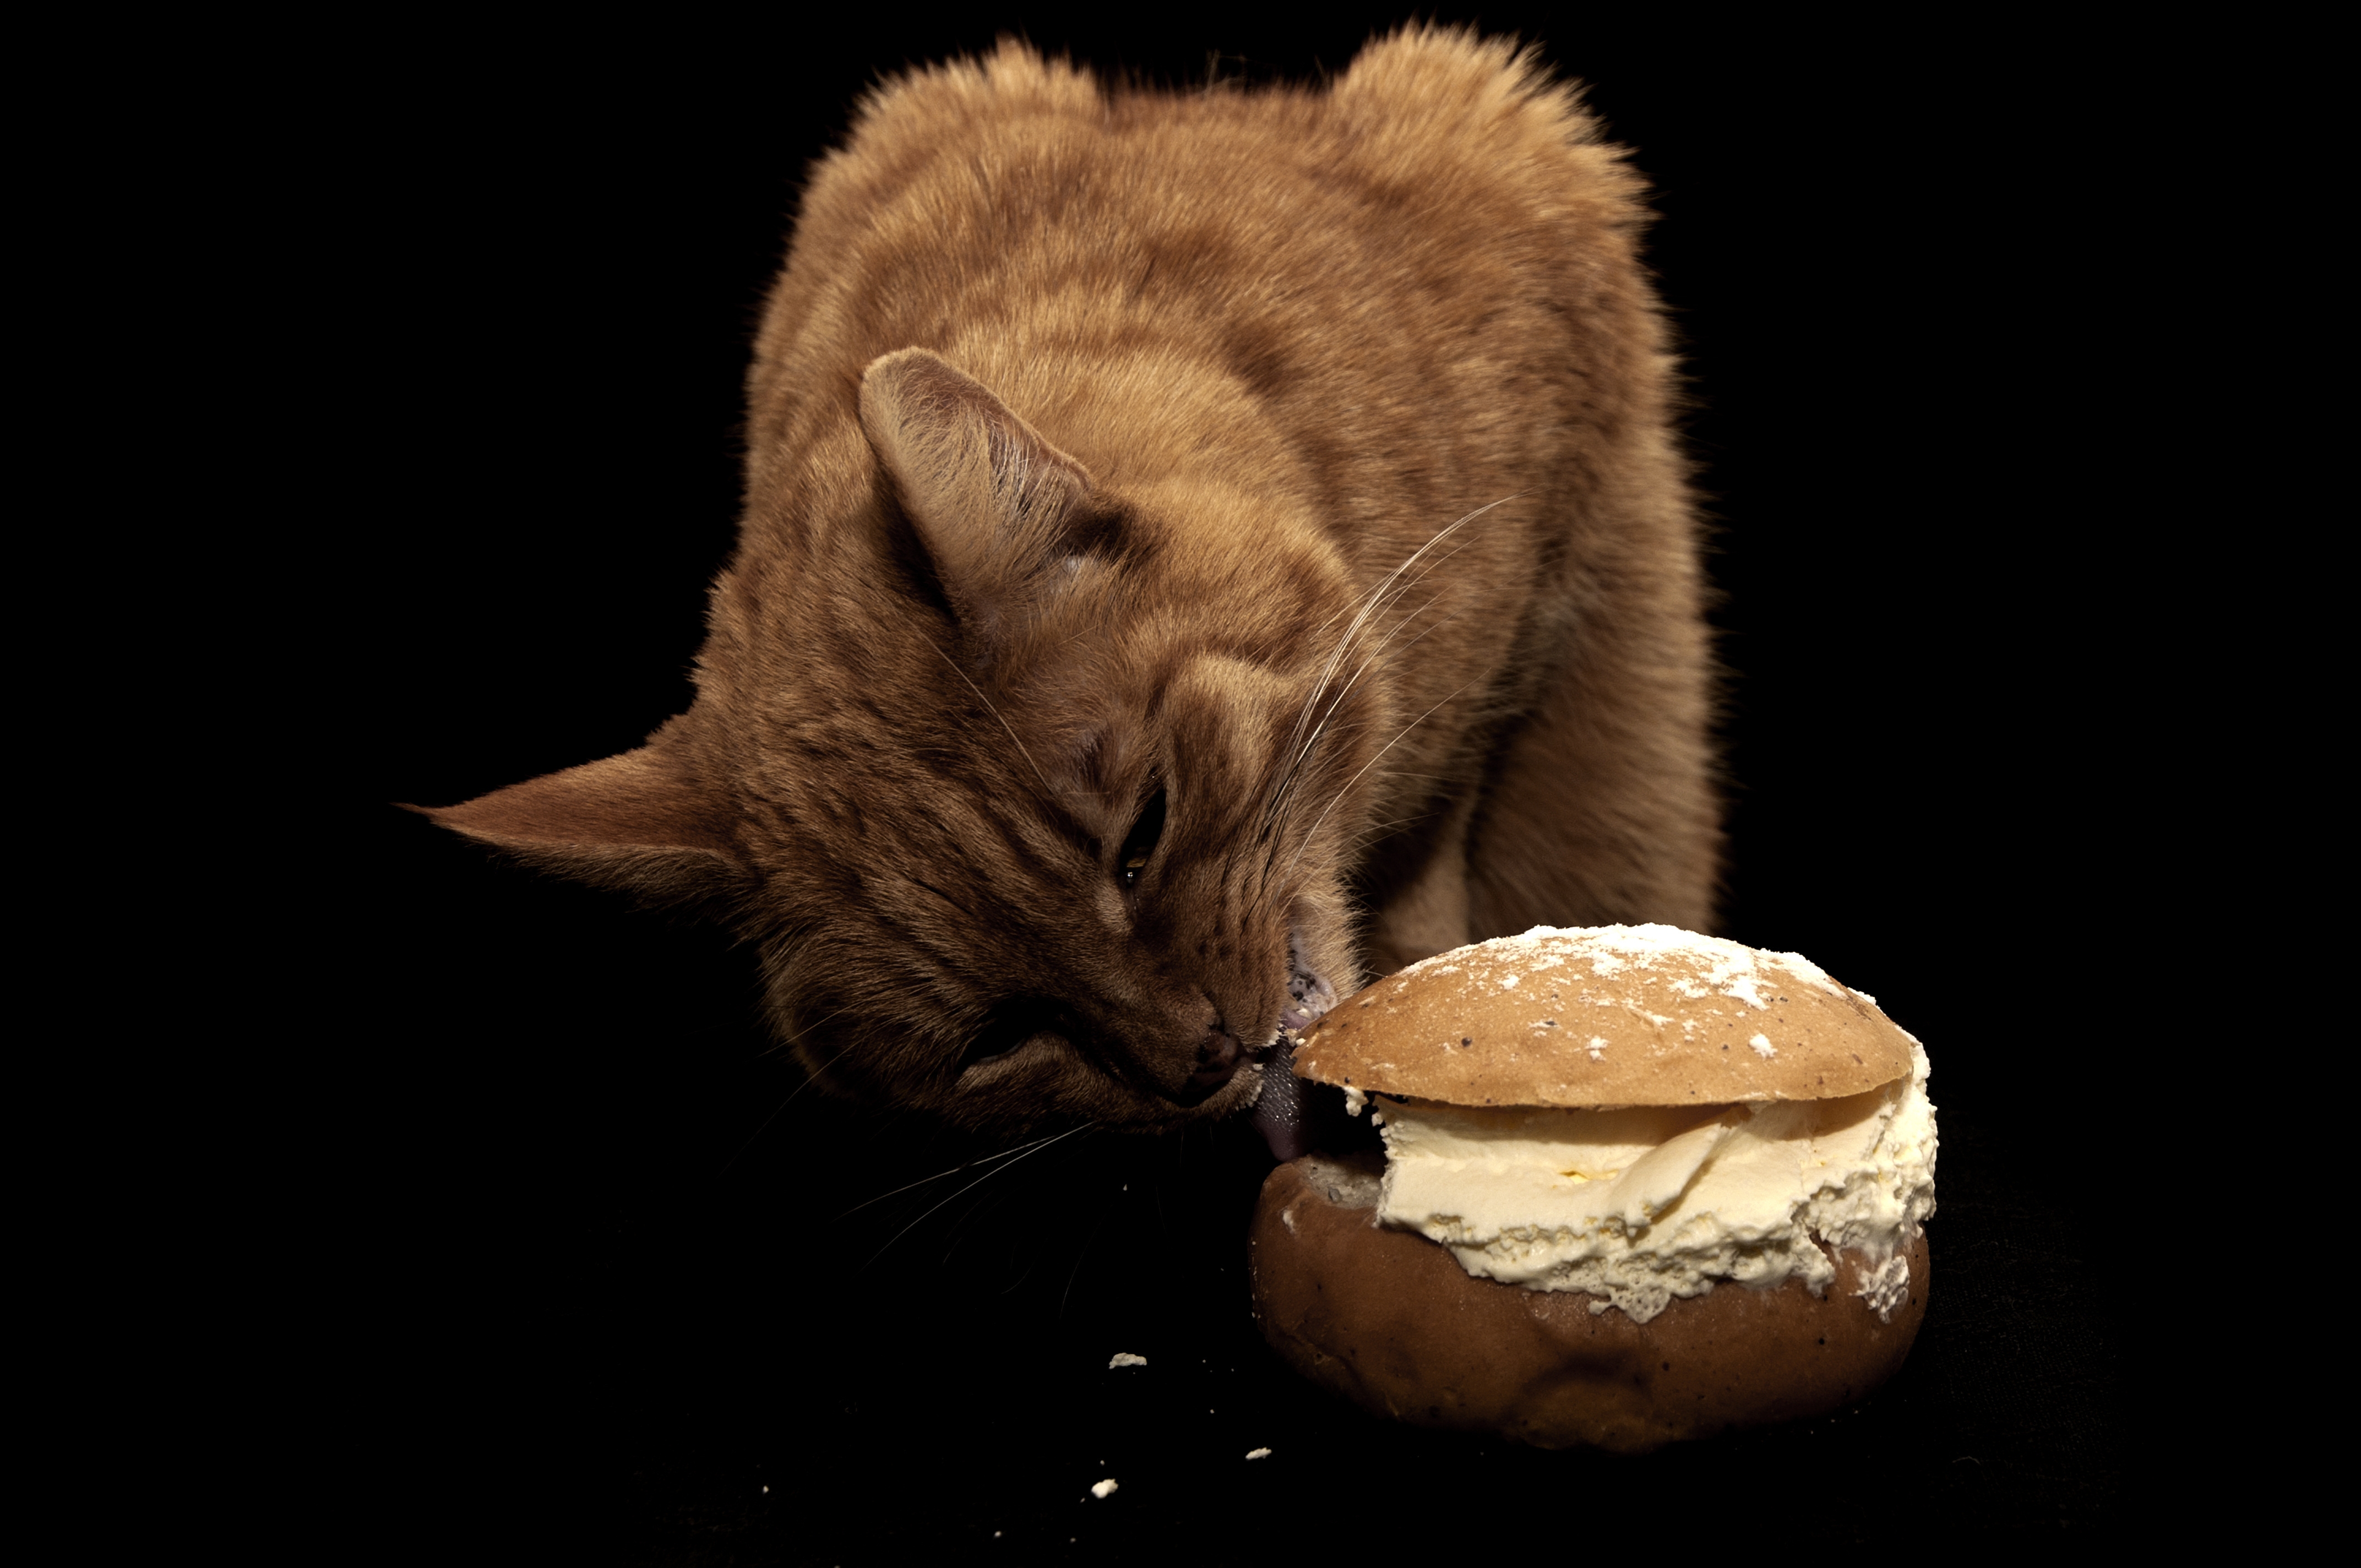 Сливочное масло коту. Котик с едой. Кот бутерброд. Кот кушает бутерброд. Котик ест булочку.